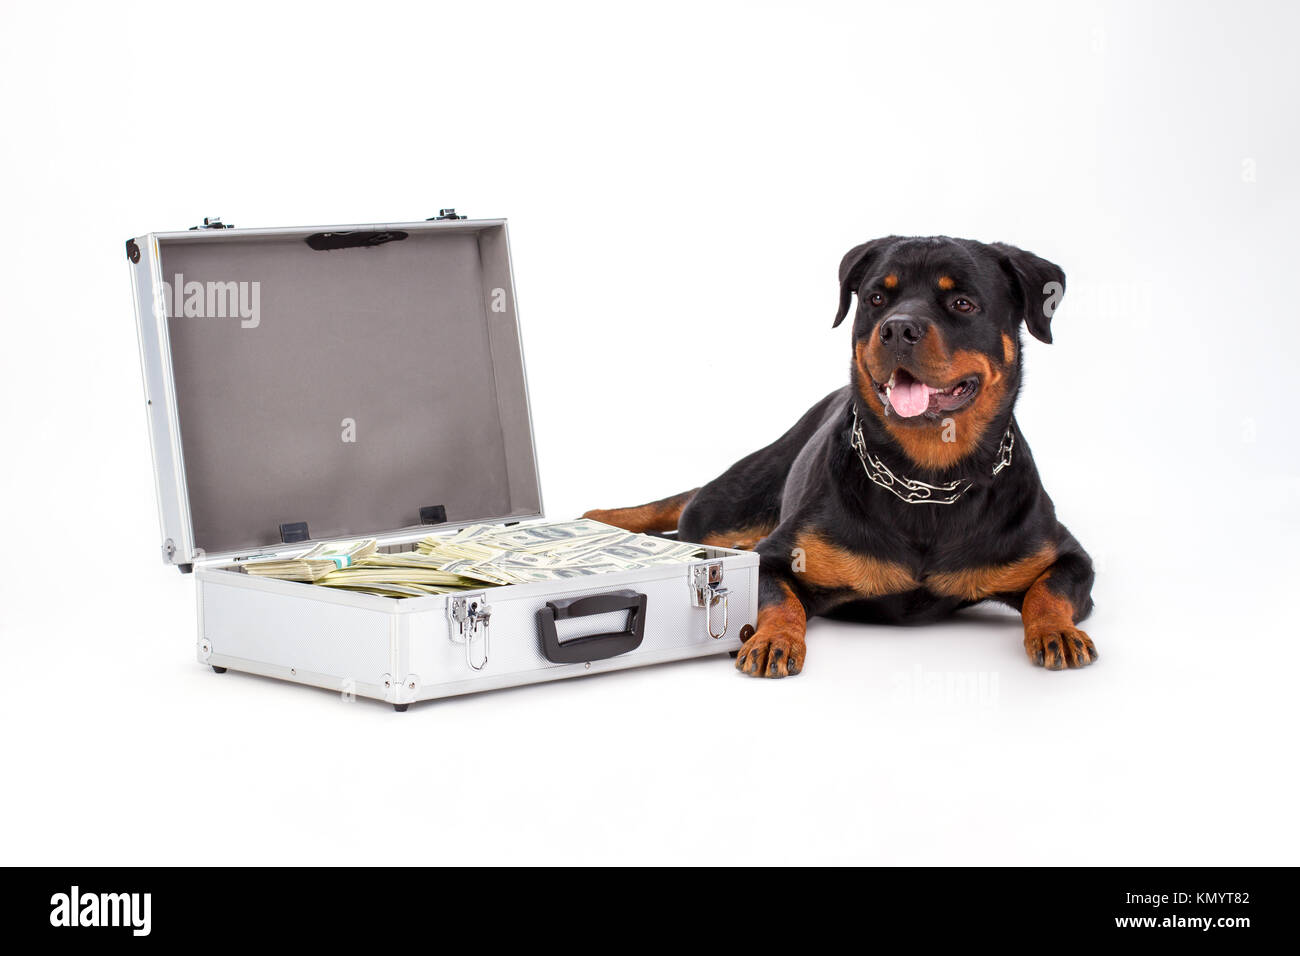 Suitcase full of money and large dog. Stock Photo